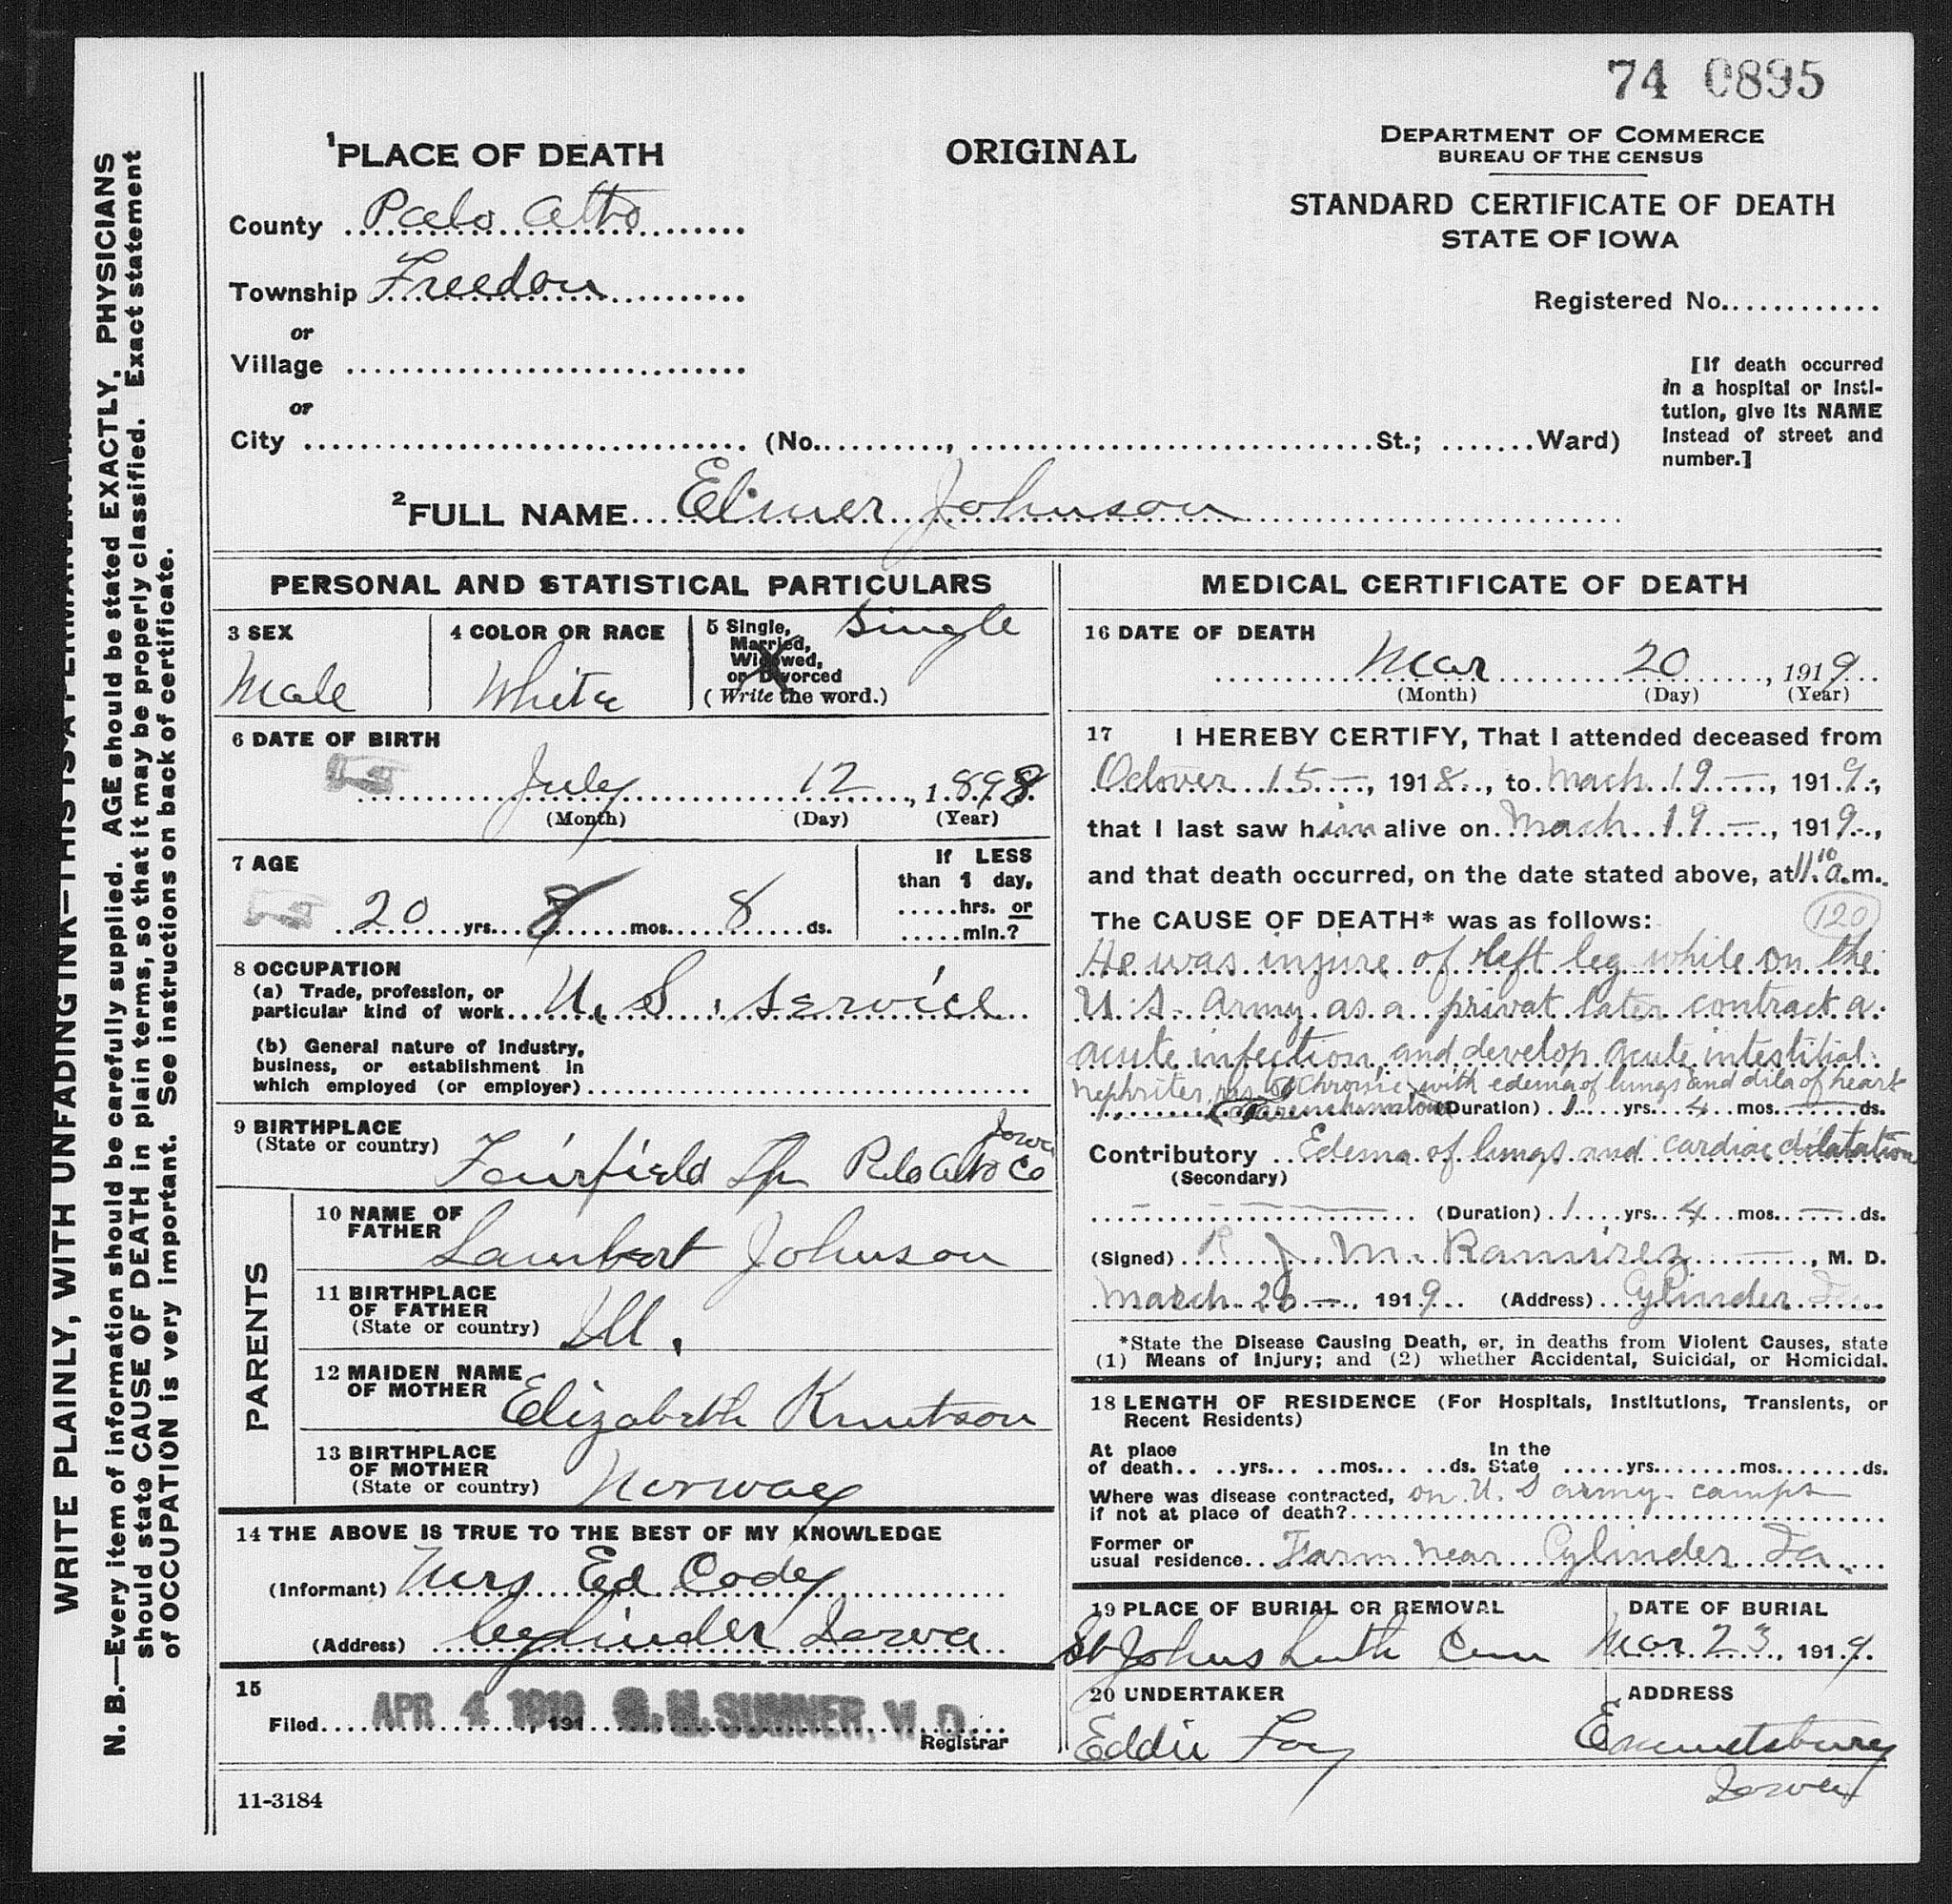 Elmer Levi Johnson - Death Certificate